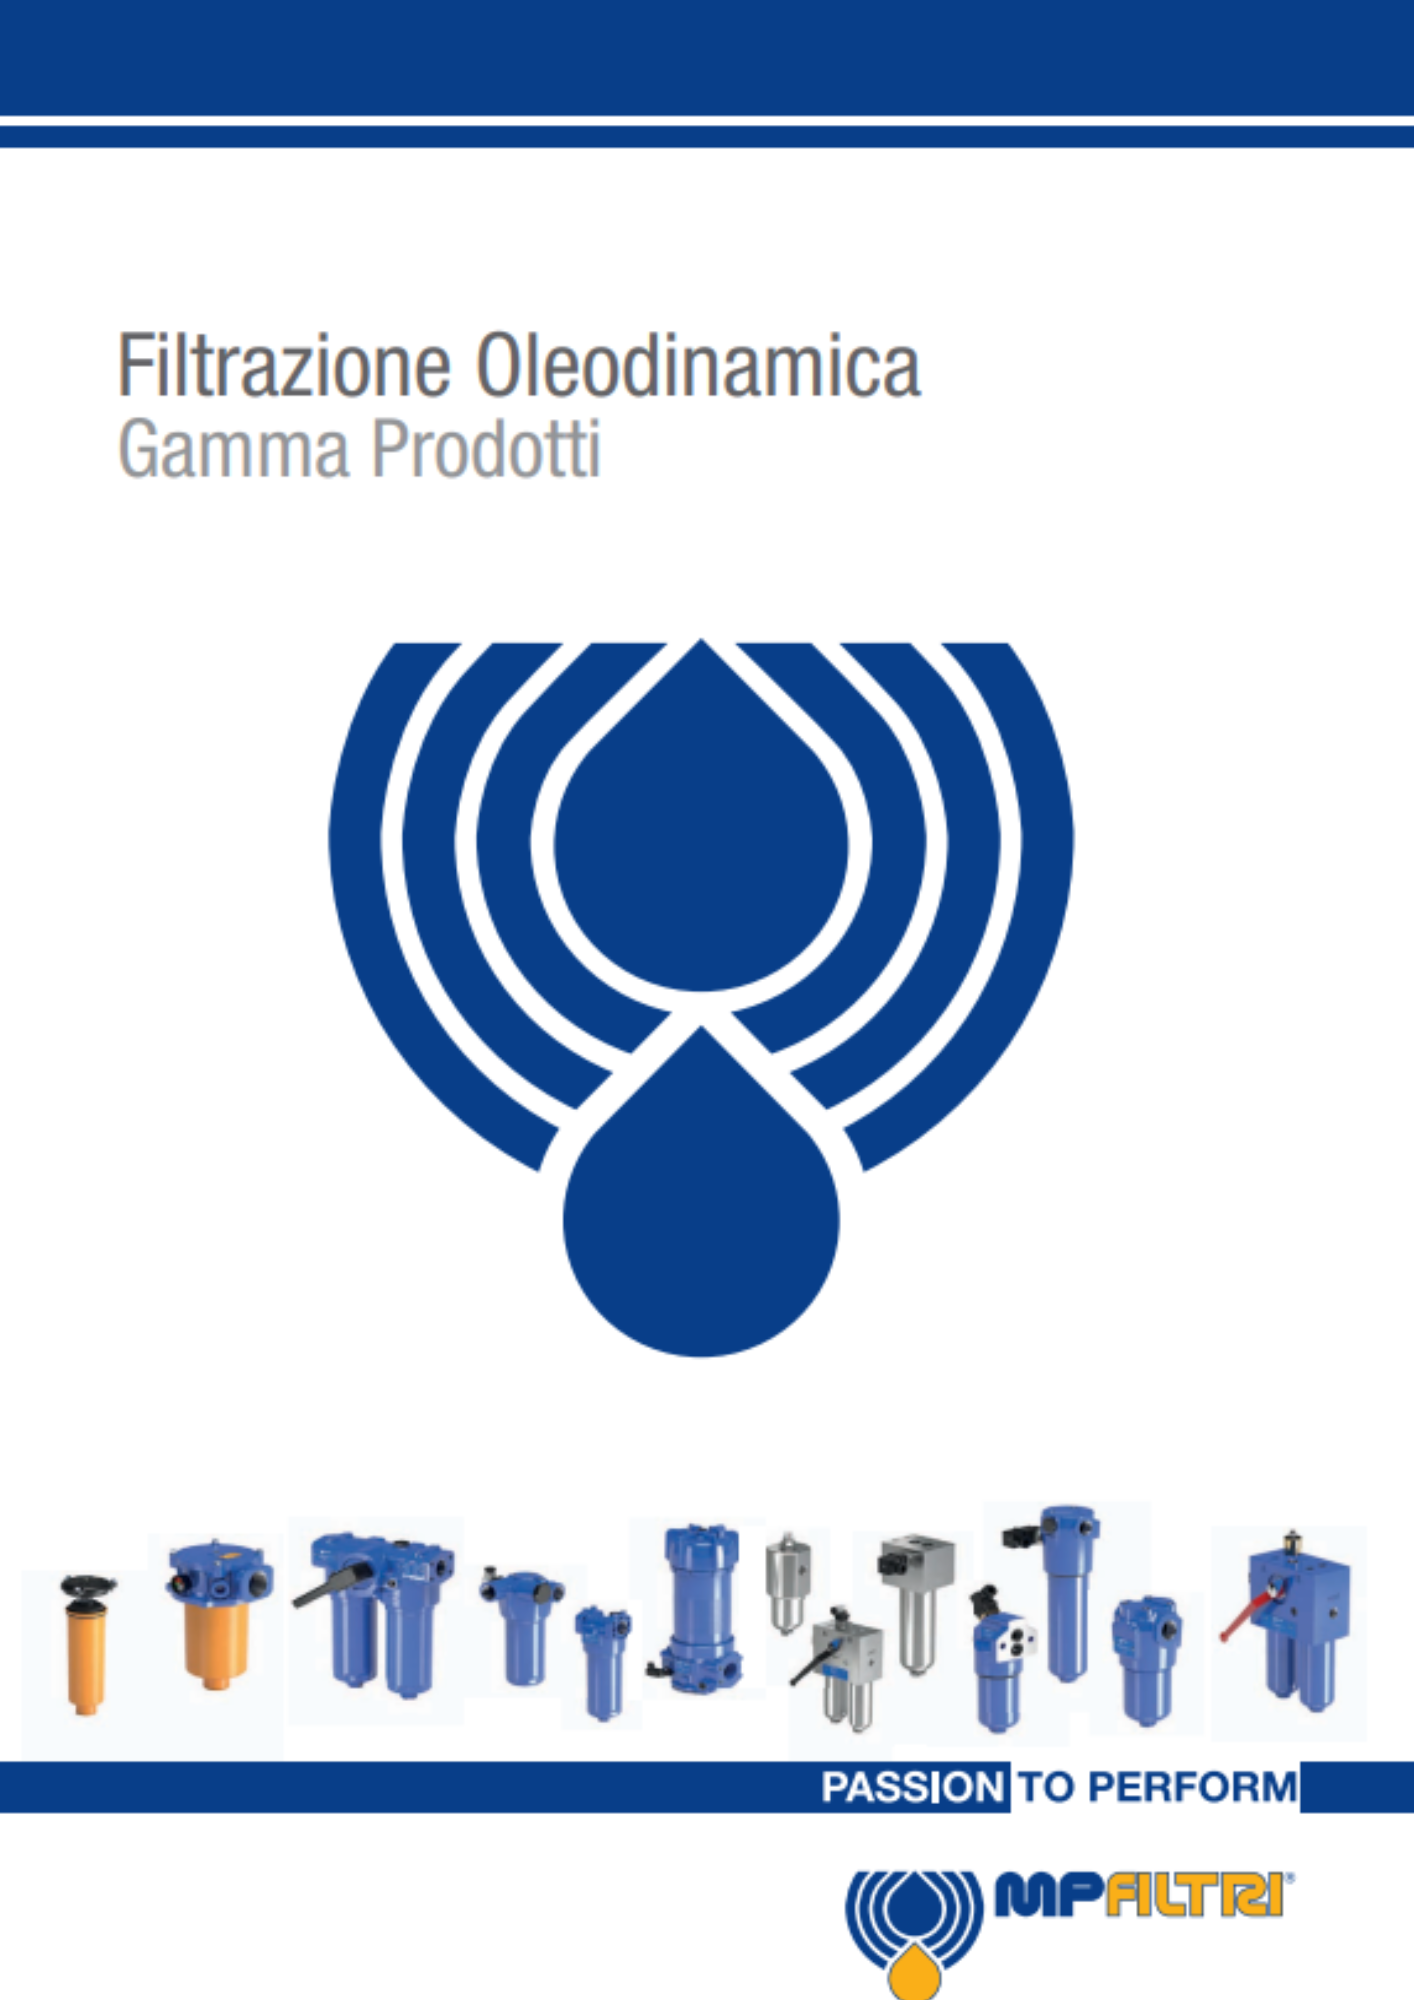 MP Filtri: filtrazione oleodinamica